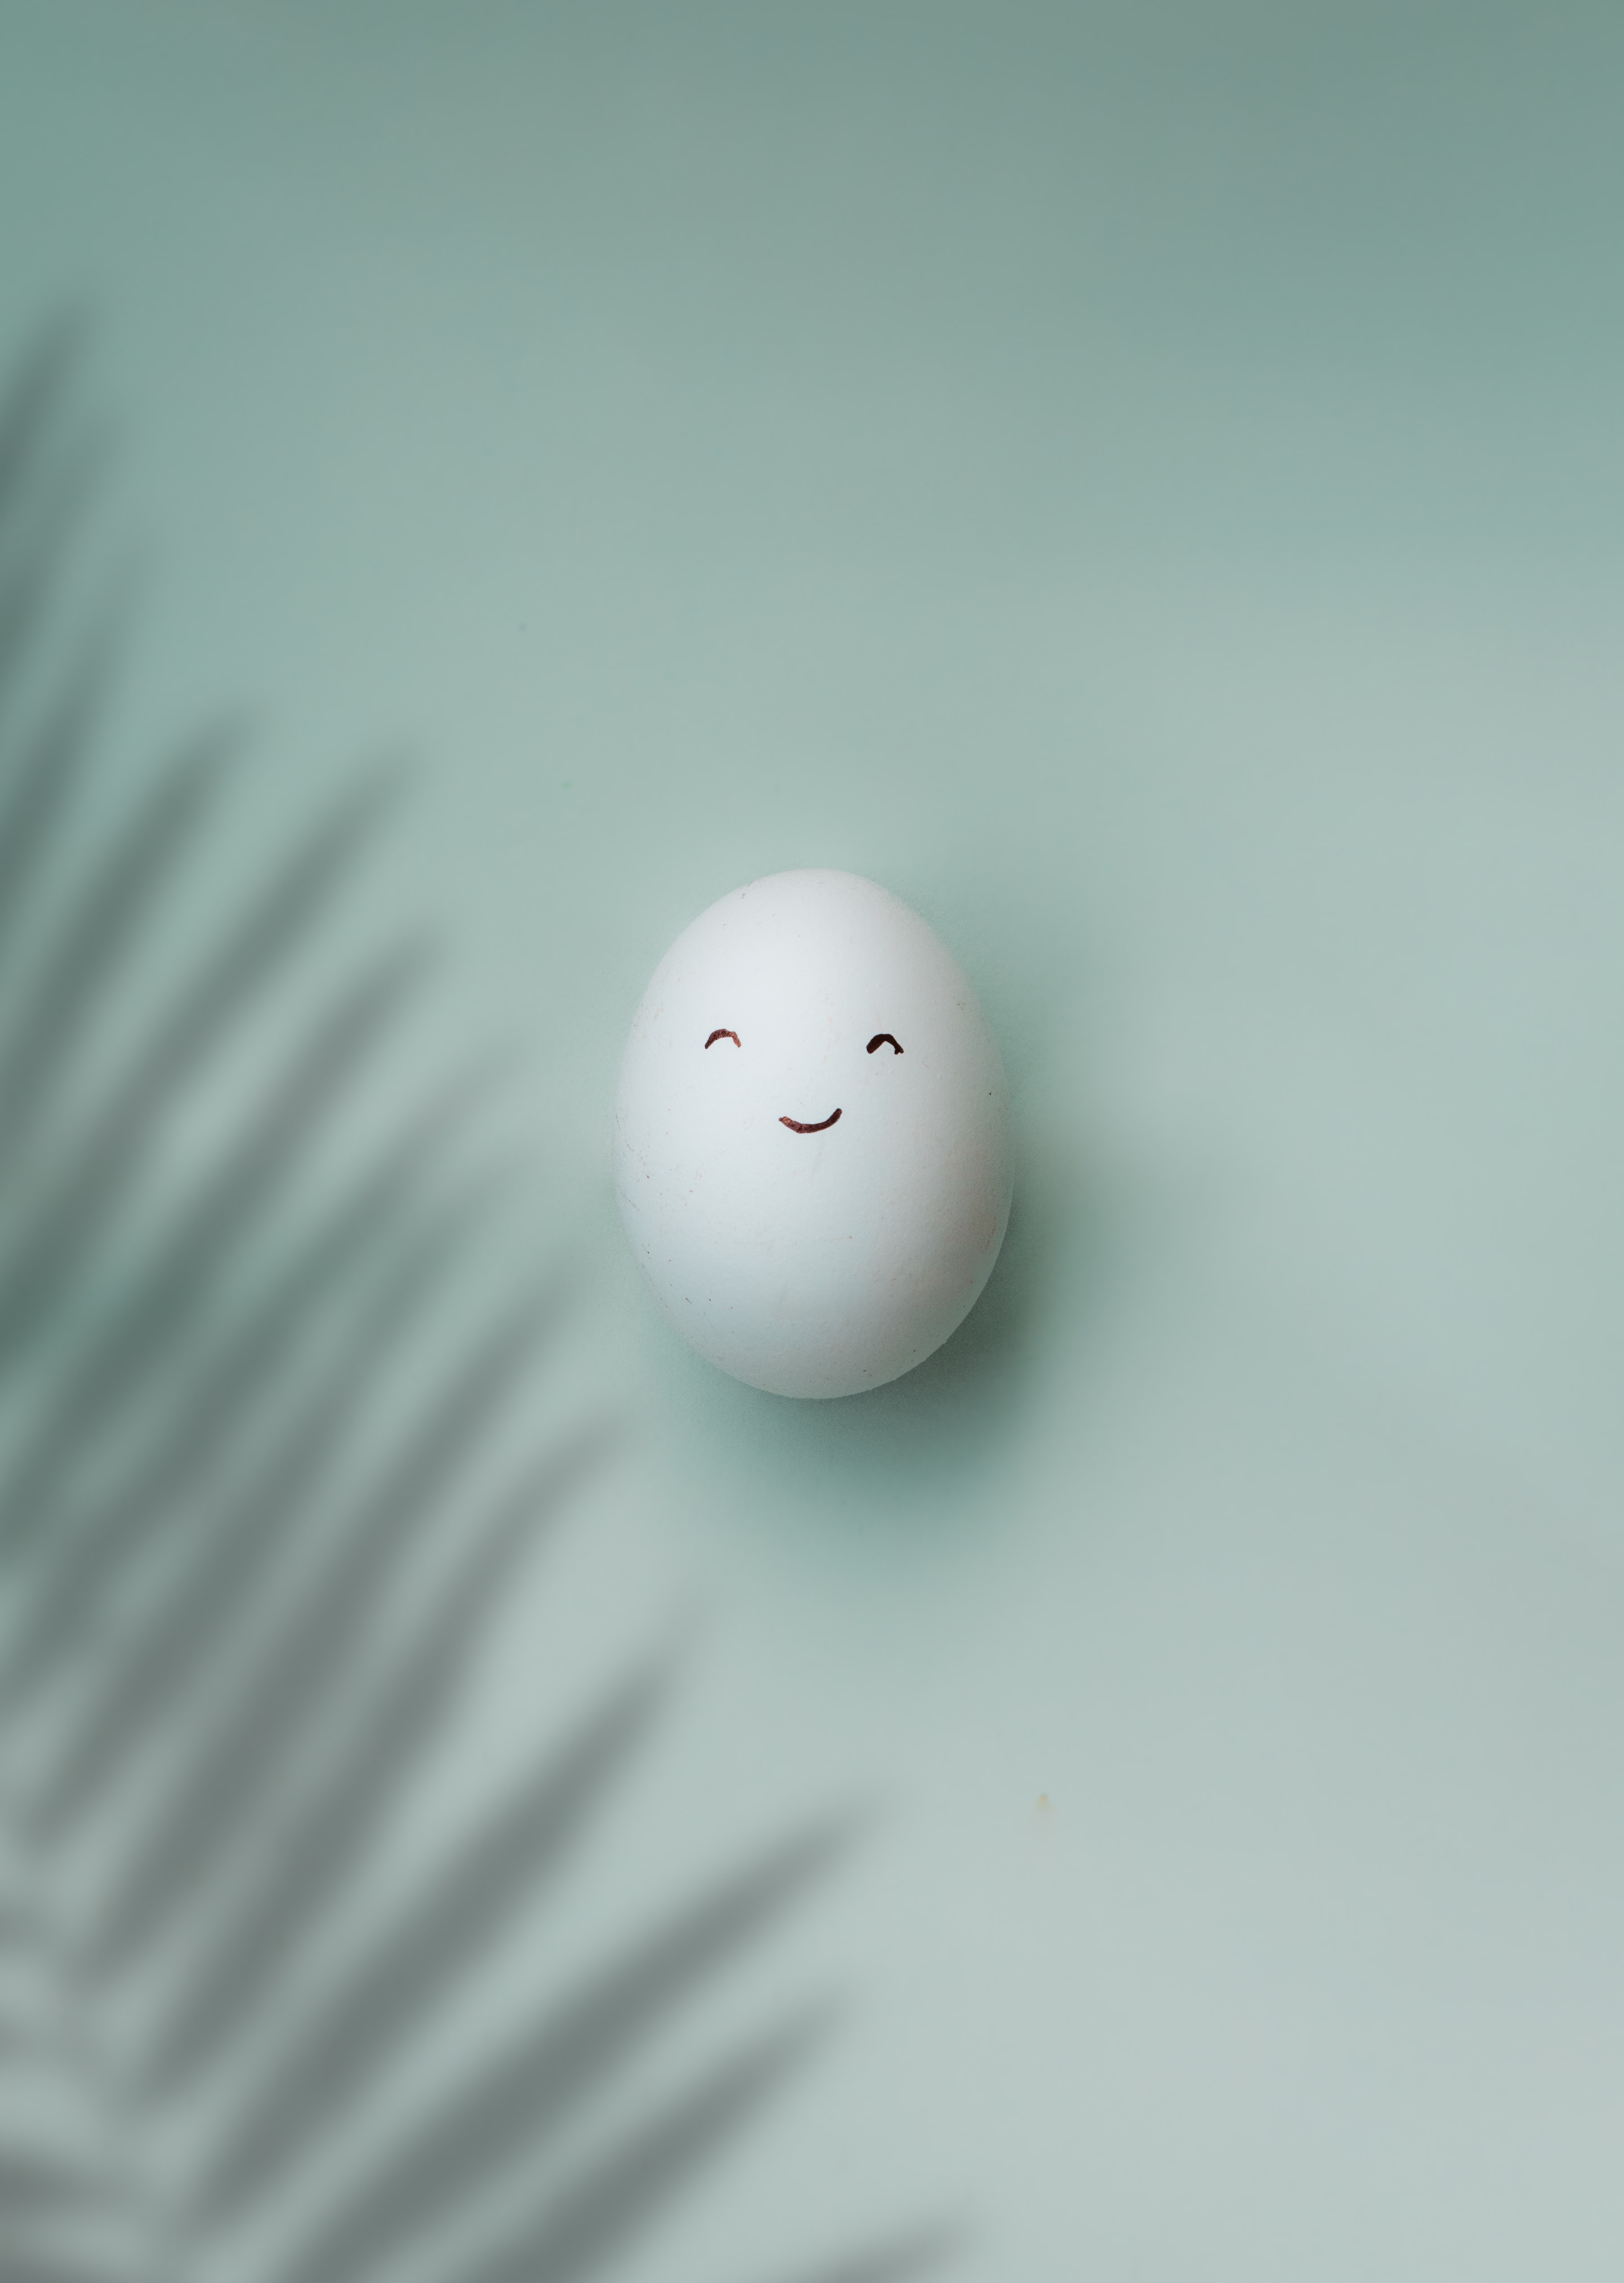 egg, white, minimalism, smile, emoticon, smiley